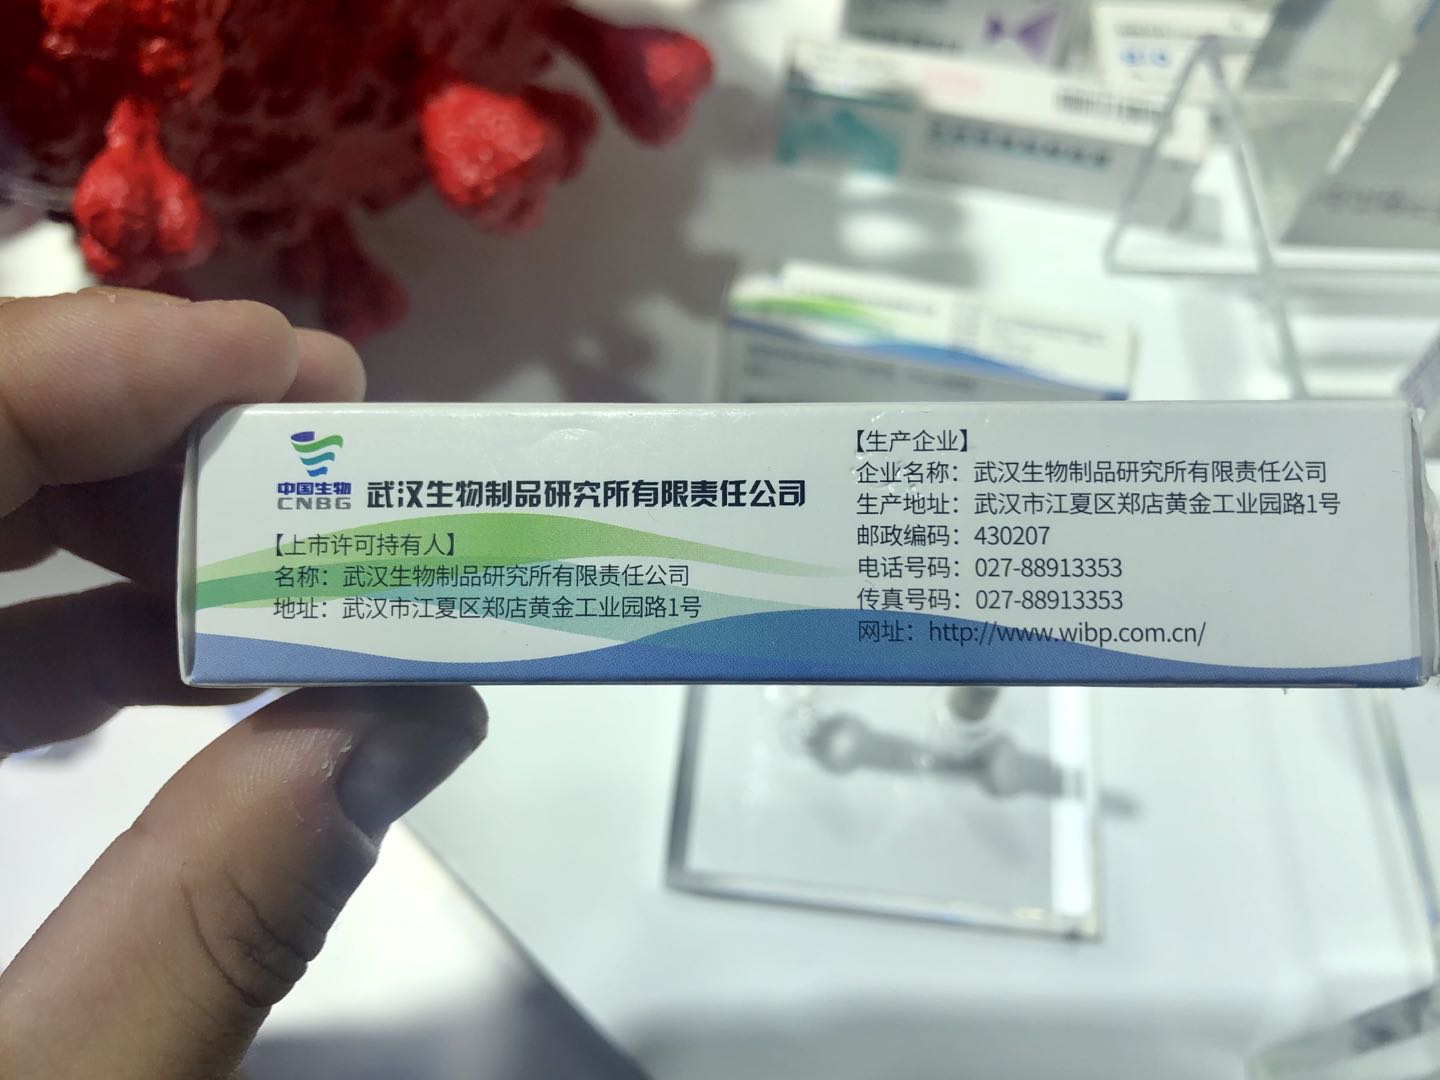 国药武汉生物新冠疫苗图片